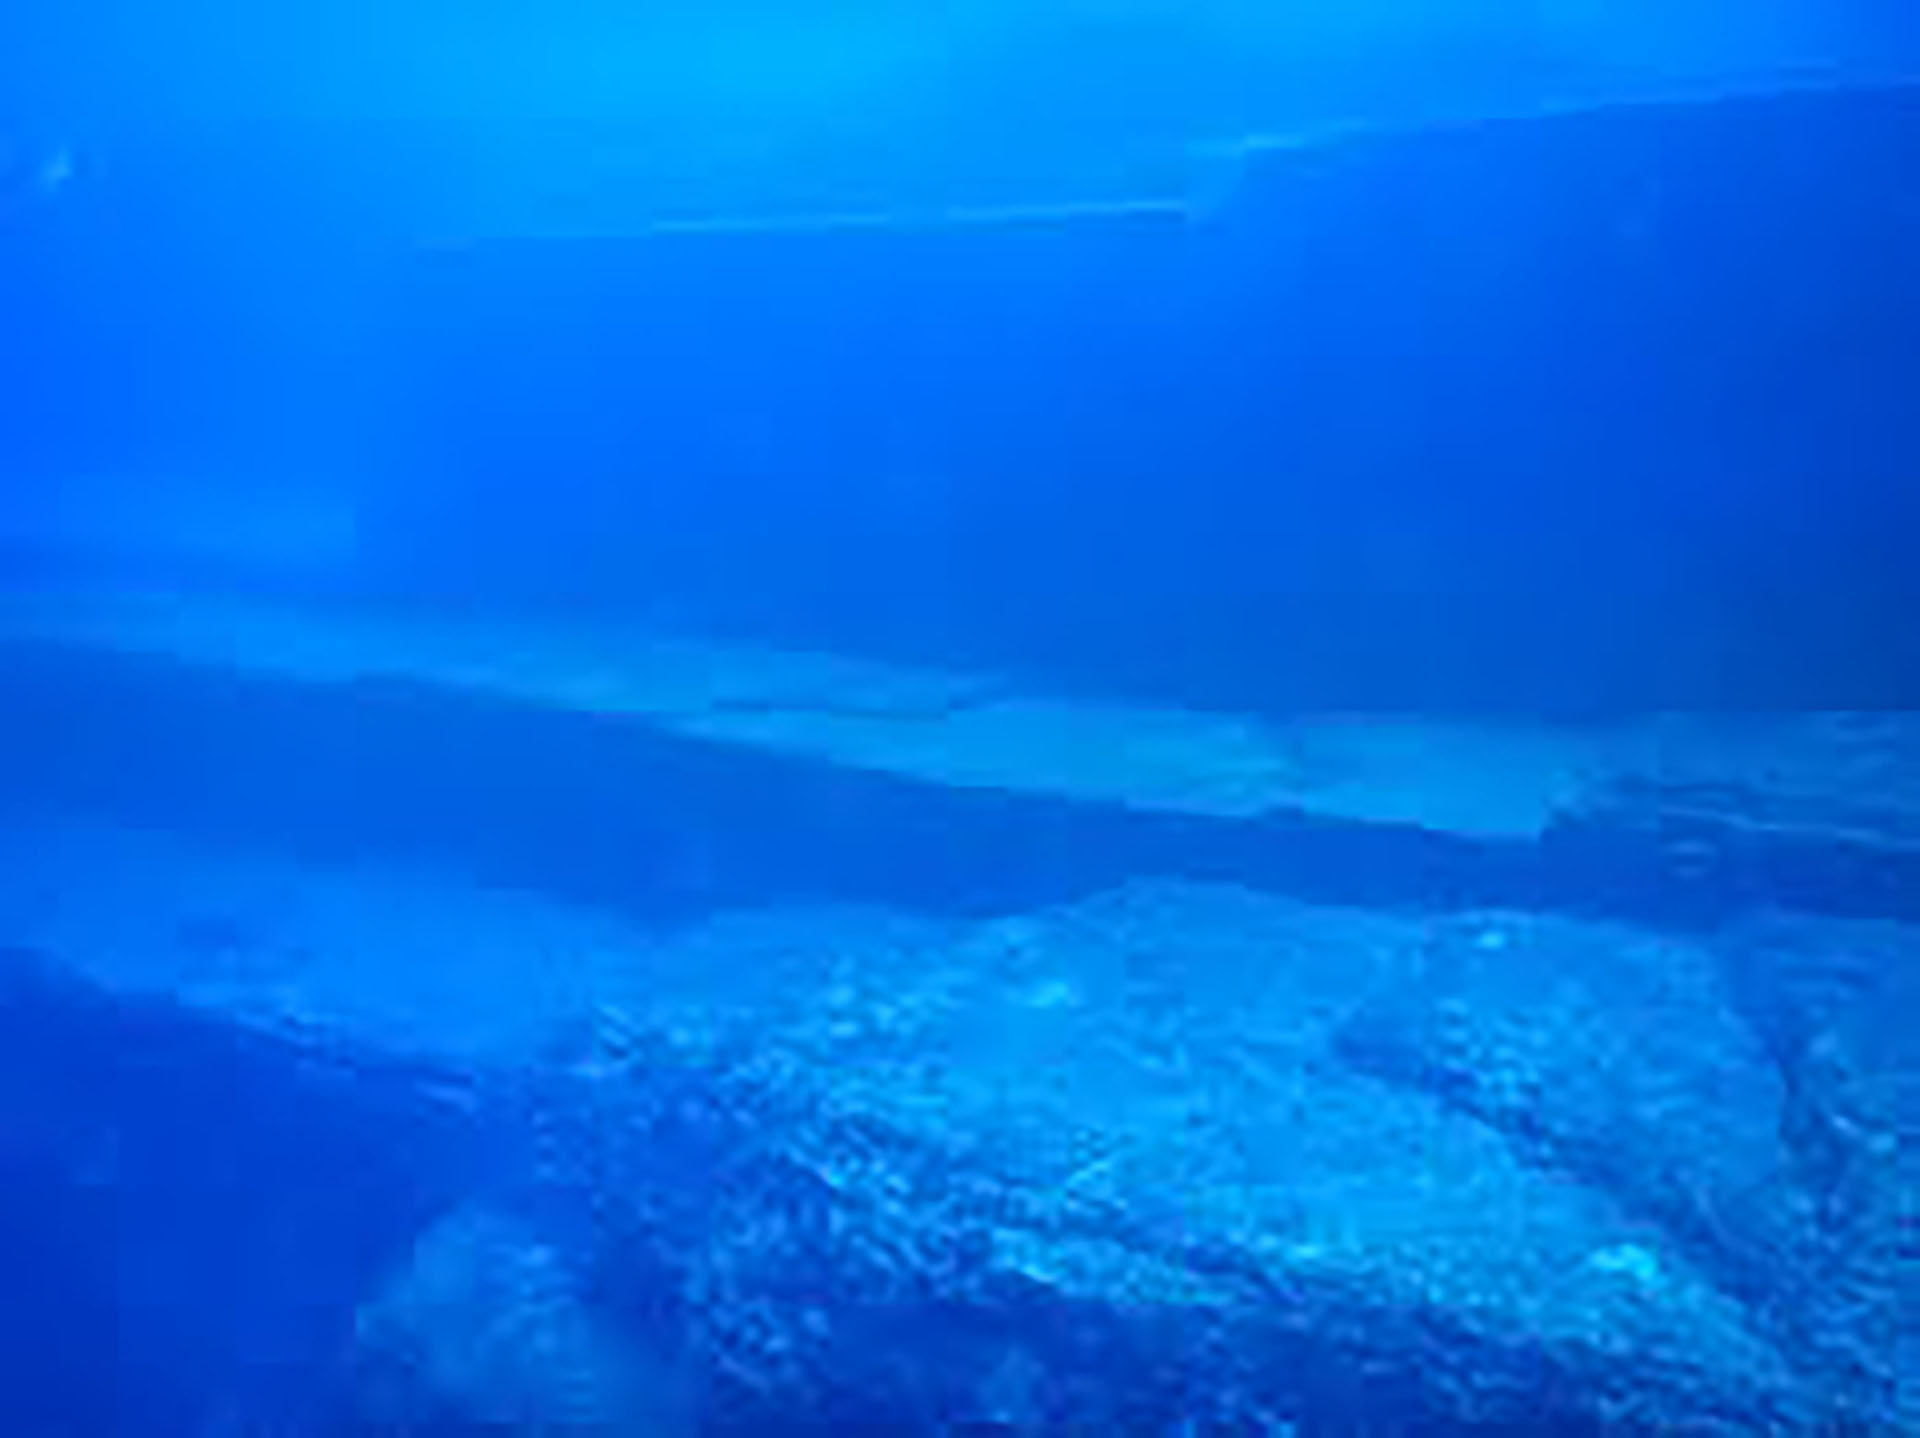 Las ruinas datan de al menos 5.000 años, según las fechas de las estalactitas encontradas dentro de las cuevas submarinas 